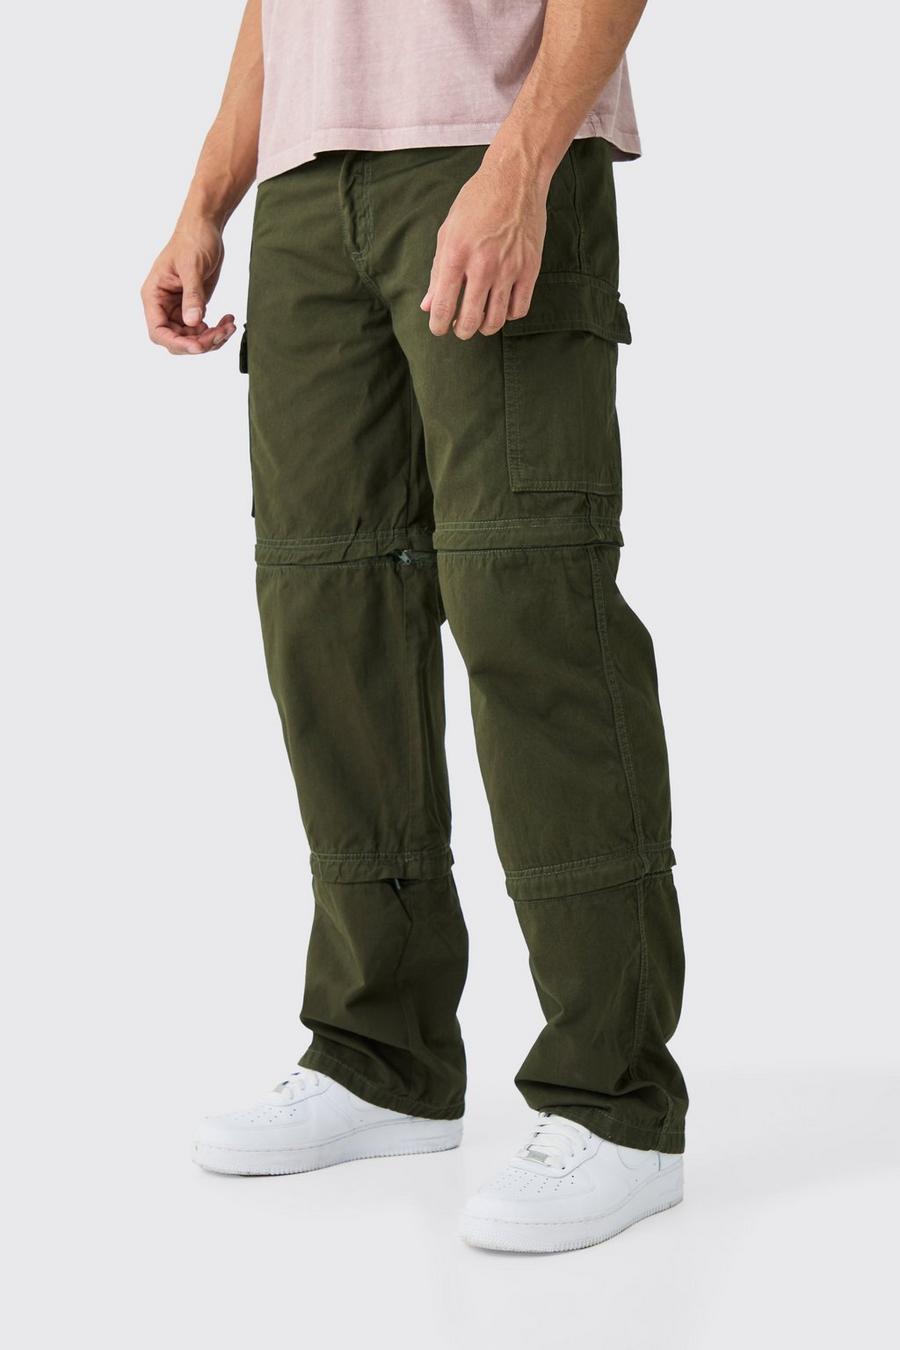 Pantaloni extra comodi con zip e pannelli in vita fissi, Khaki